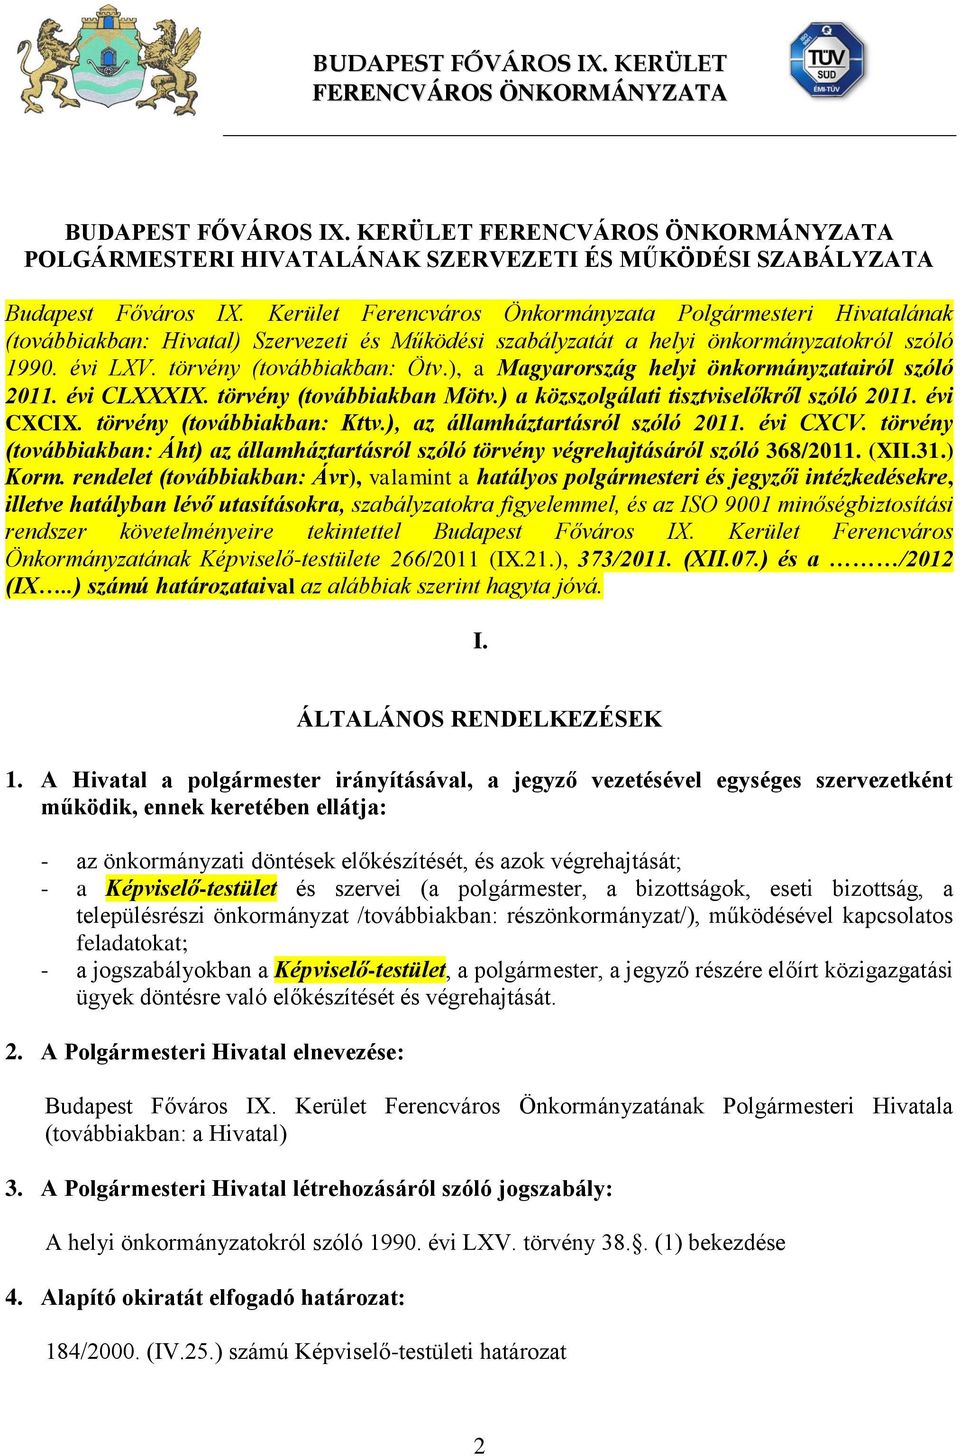 ), a Magyarország helyi önkormányzatairól szóló 2011. évi CLXXXIX. törvény (továbbiakban Mötv.) a közszolgálati tisztviselőkről szóló 2011. évi CXCIX. törvény (továbbiakban: Kttv.